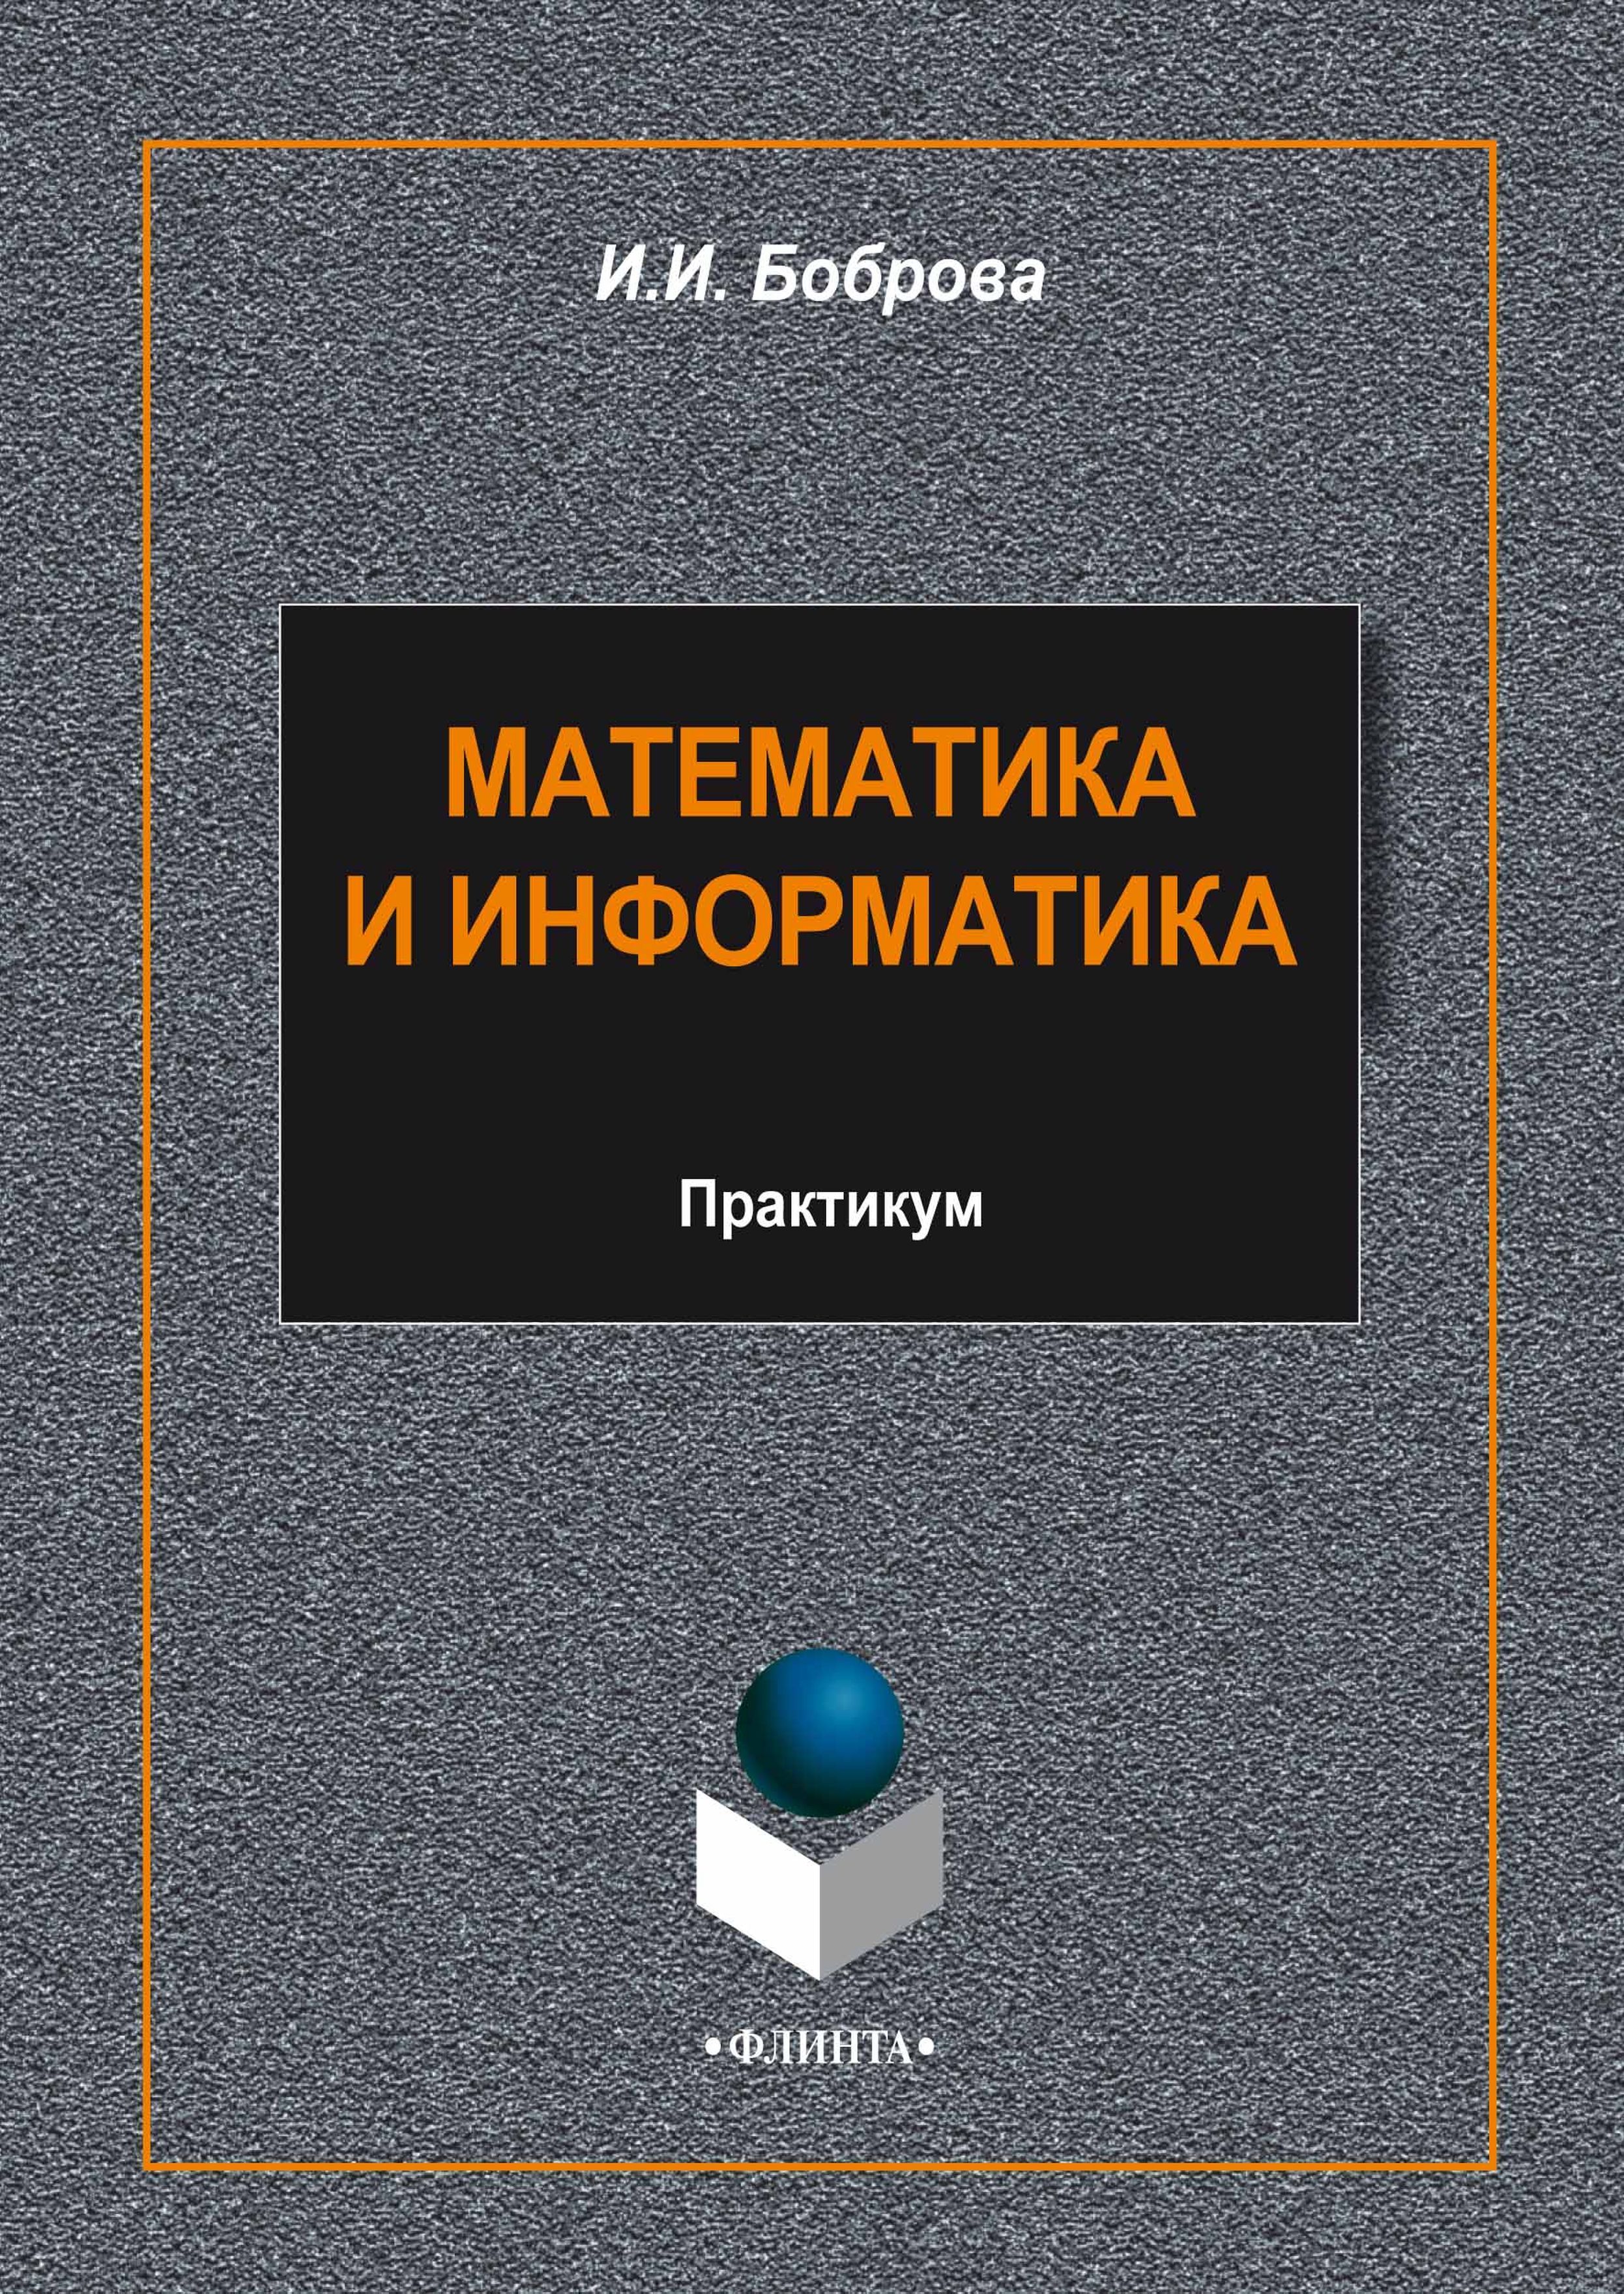 Книга  Математика и информатика созданная И. И. Боброва может относится к жанру математика, педагогика, практикумы, программы. Стоимость электронной книги Математика и информатика с идентификатором 9814799 составляет 100.00 руб.